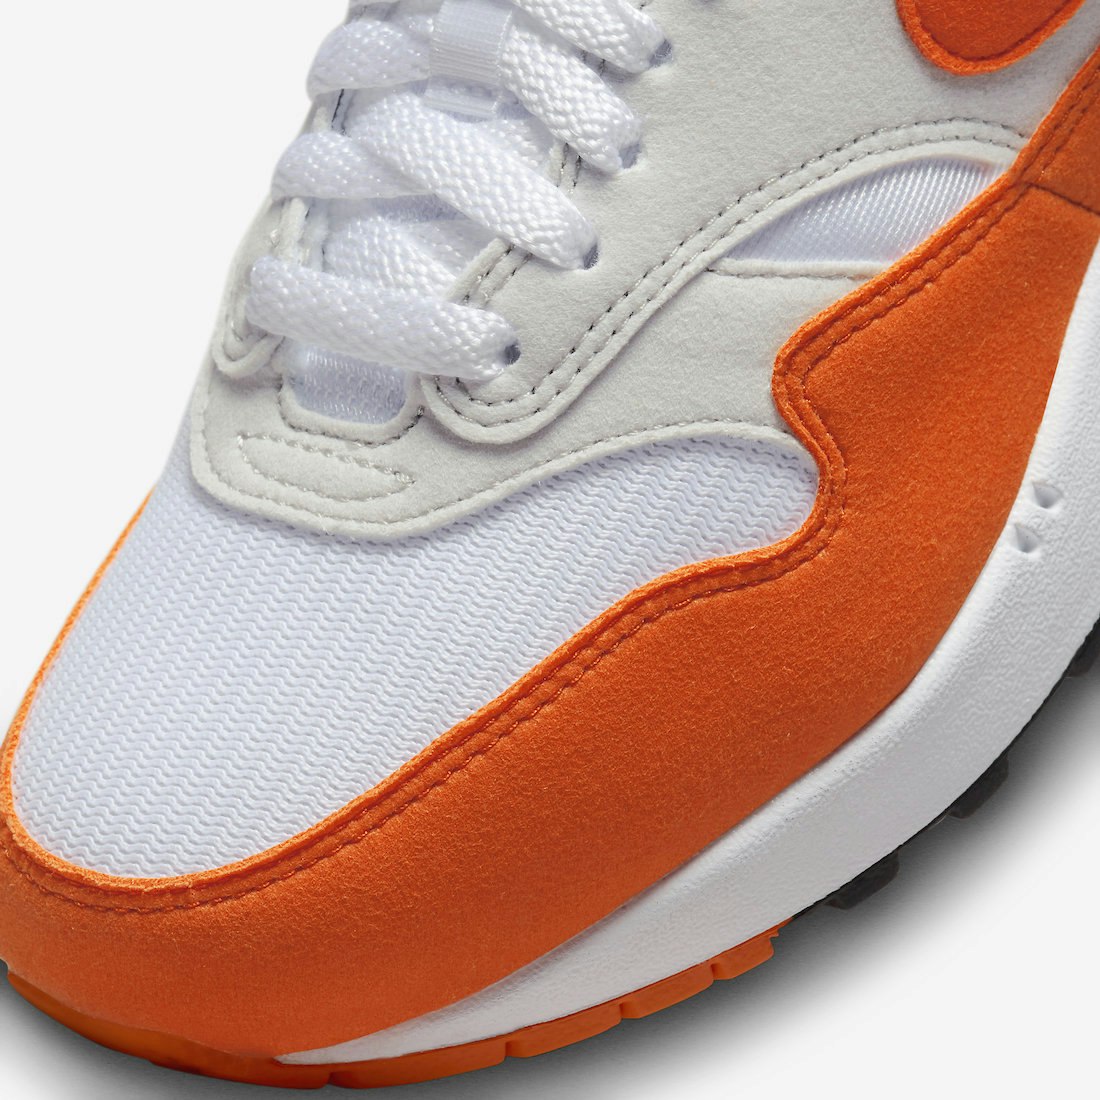 Nike Air Max 1 "Safety Orange"